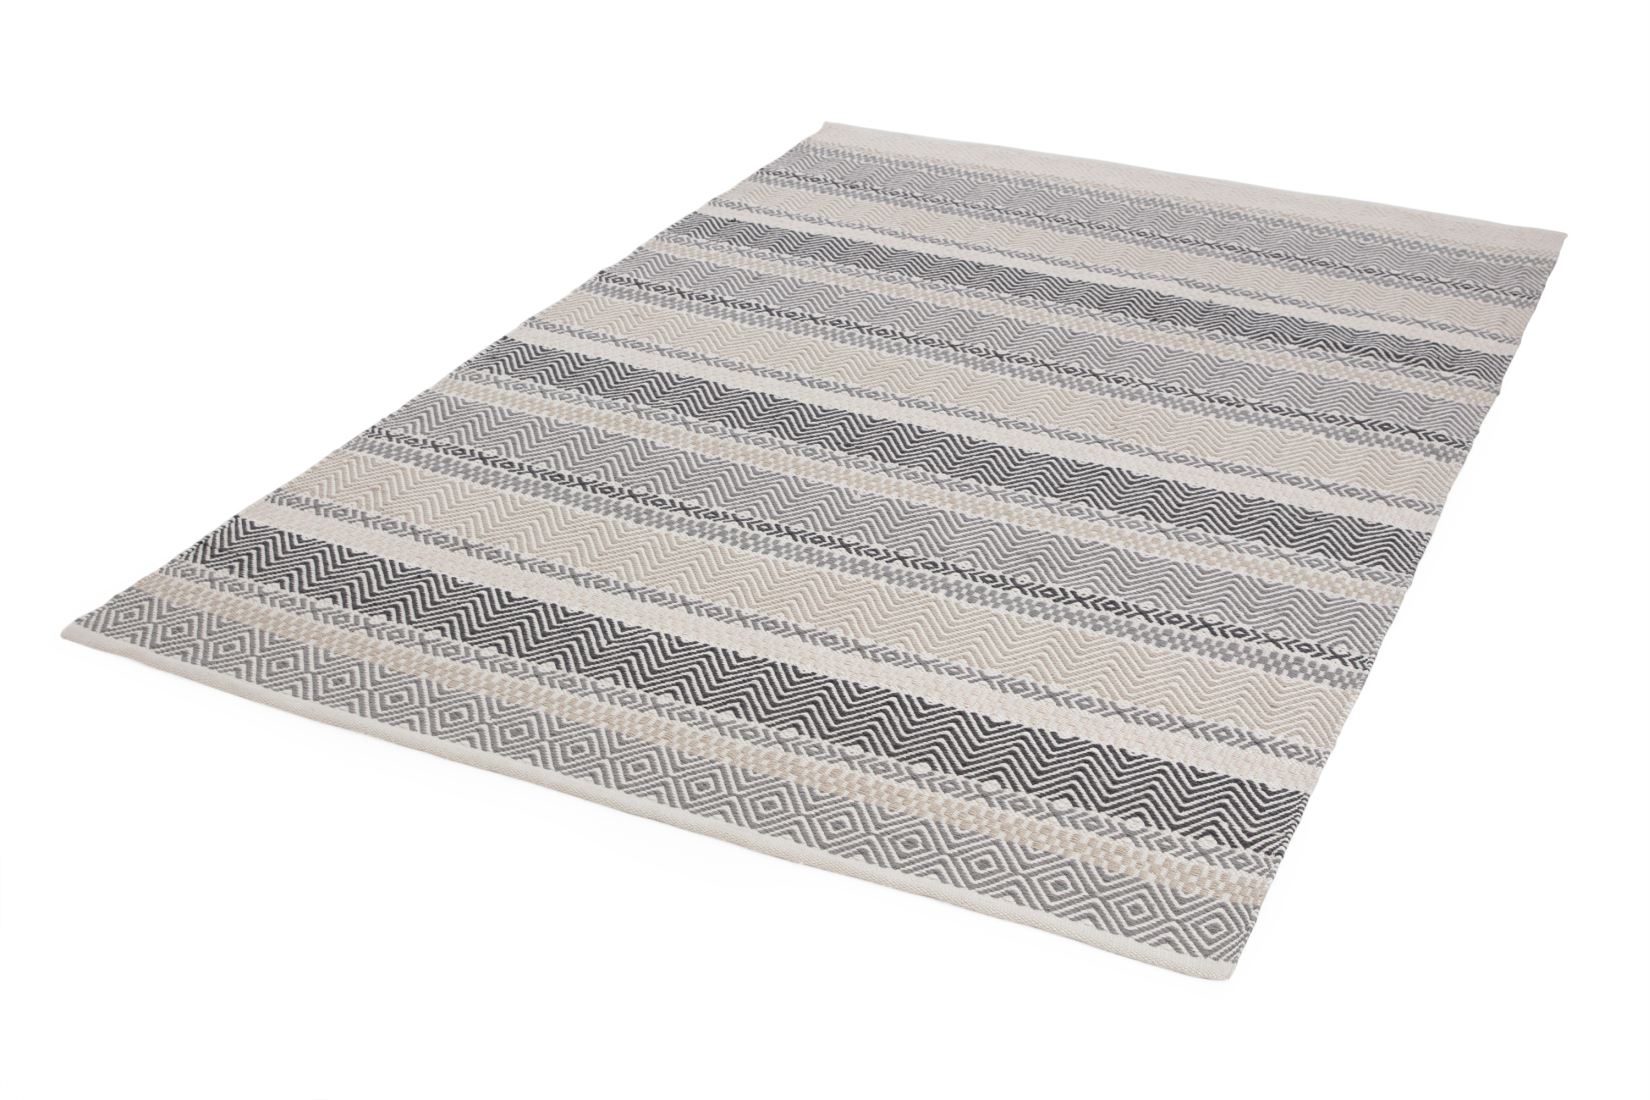 Boardwalk Striped Rug - Grey Multi 